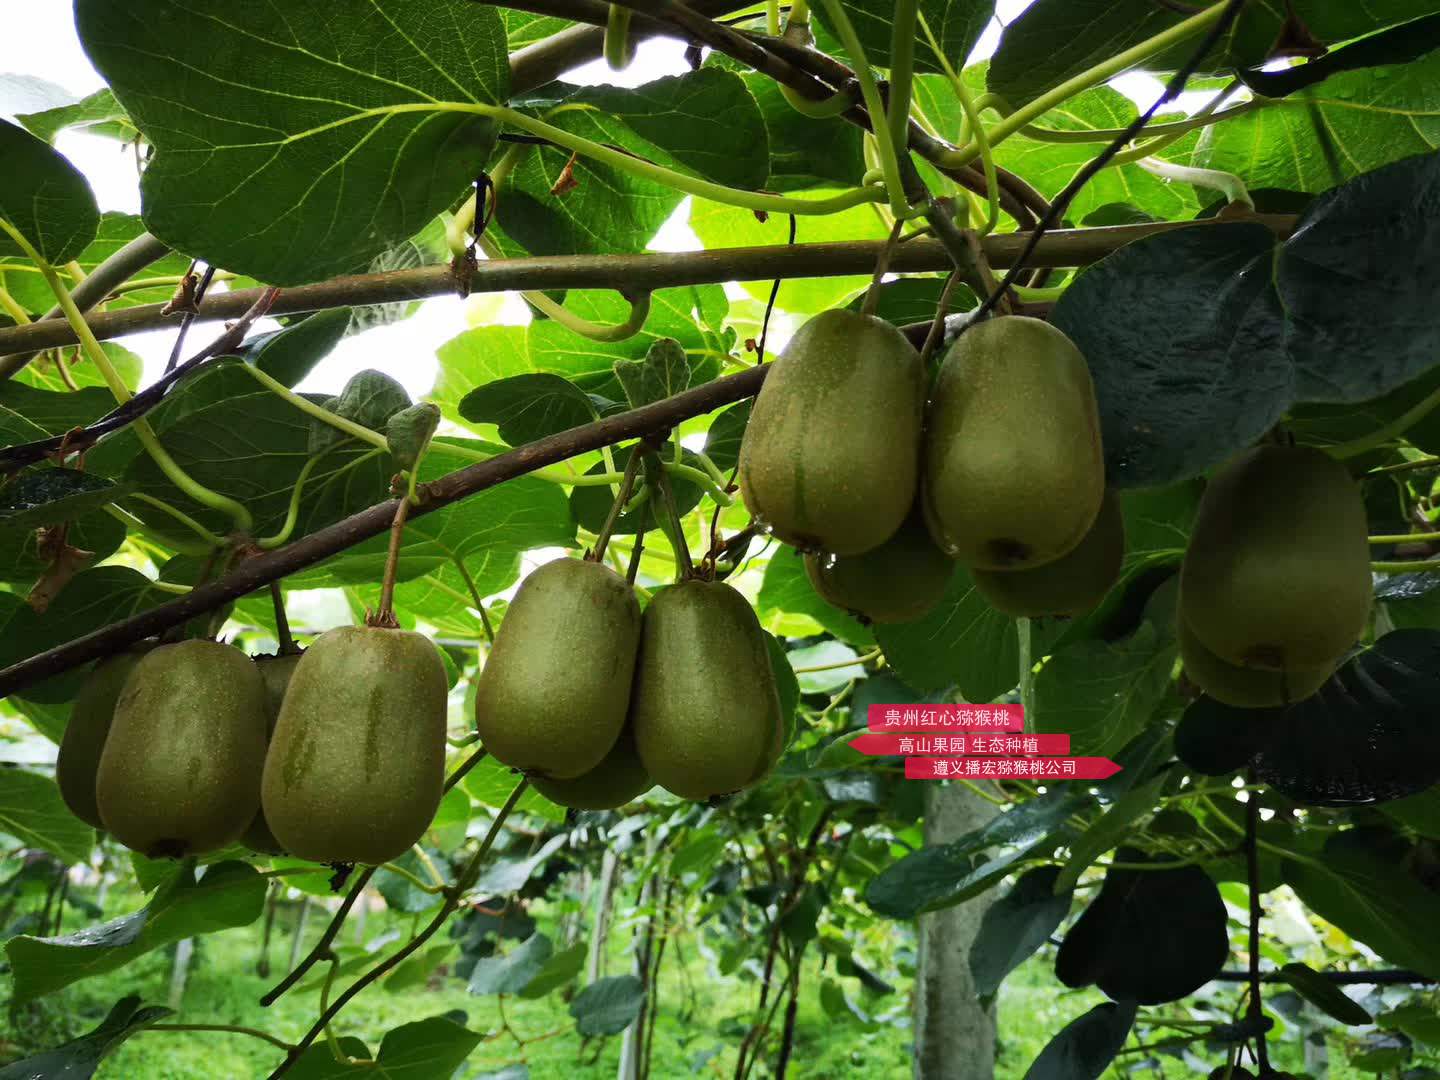 确保播宏公司在贵州建立有机红心猕猴桃种植示范园实现